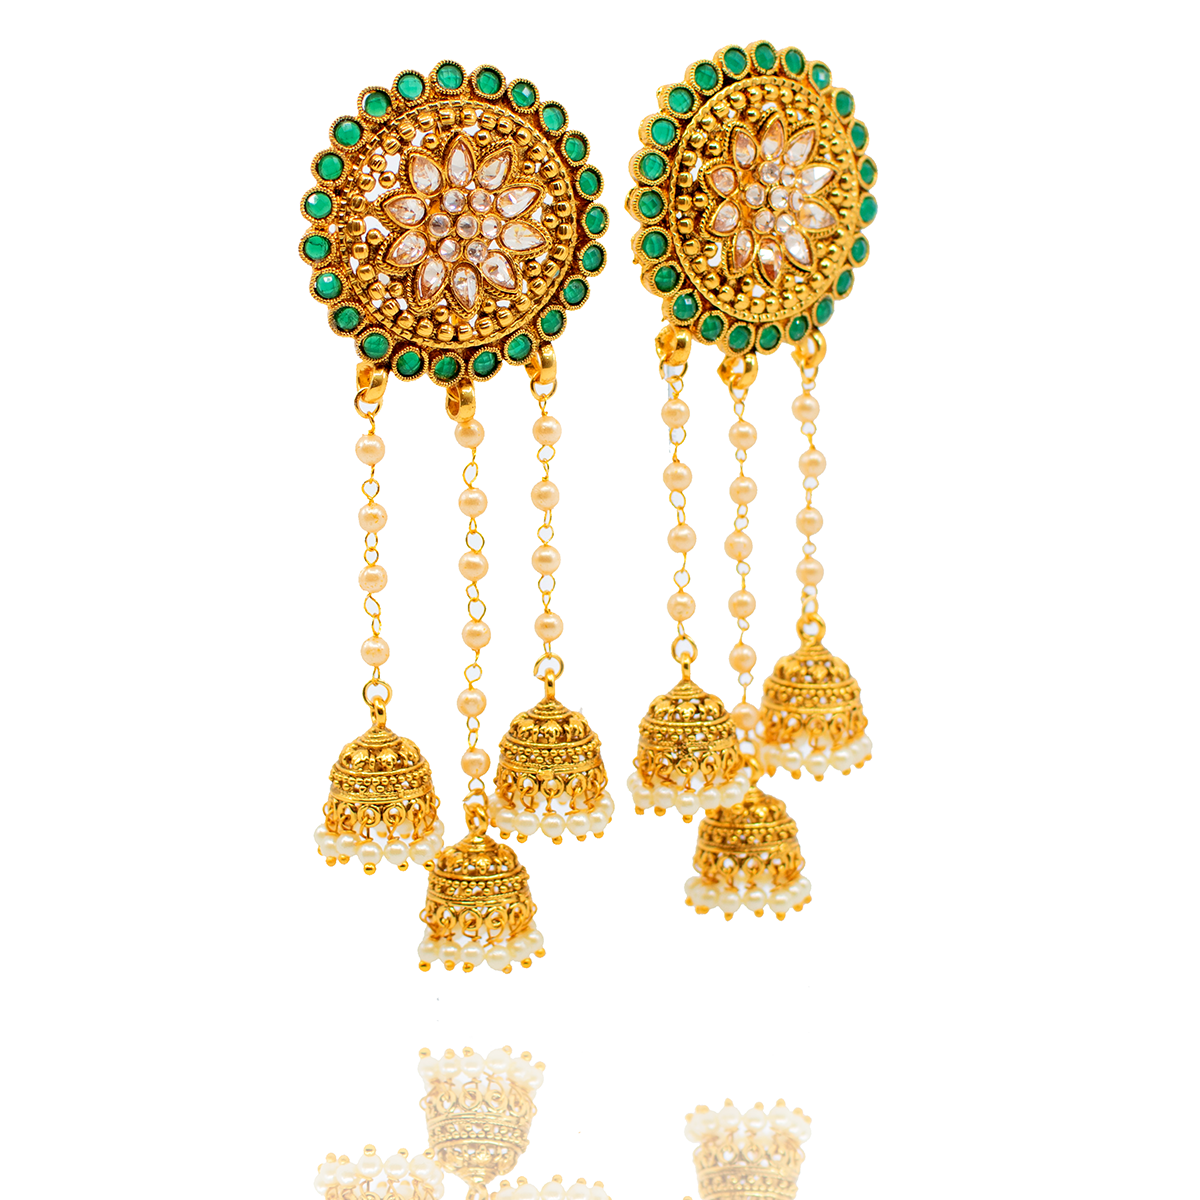 Vasati Earrings - Emerald